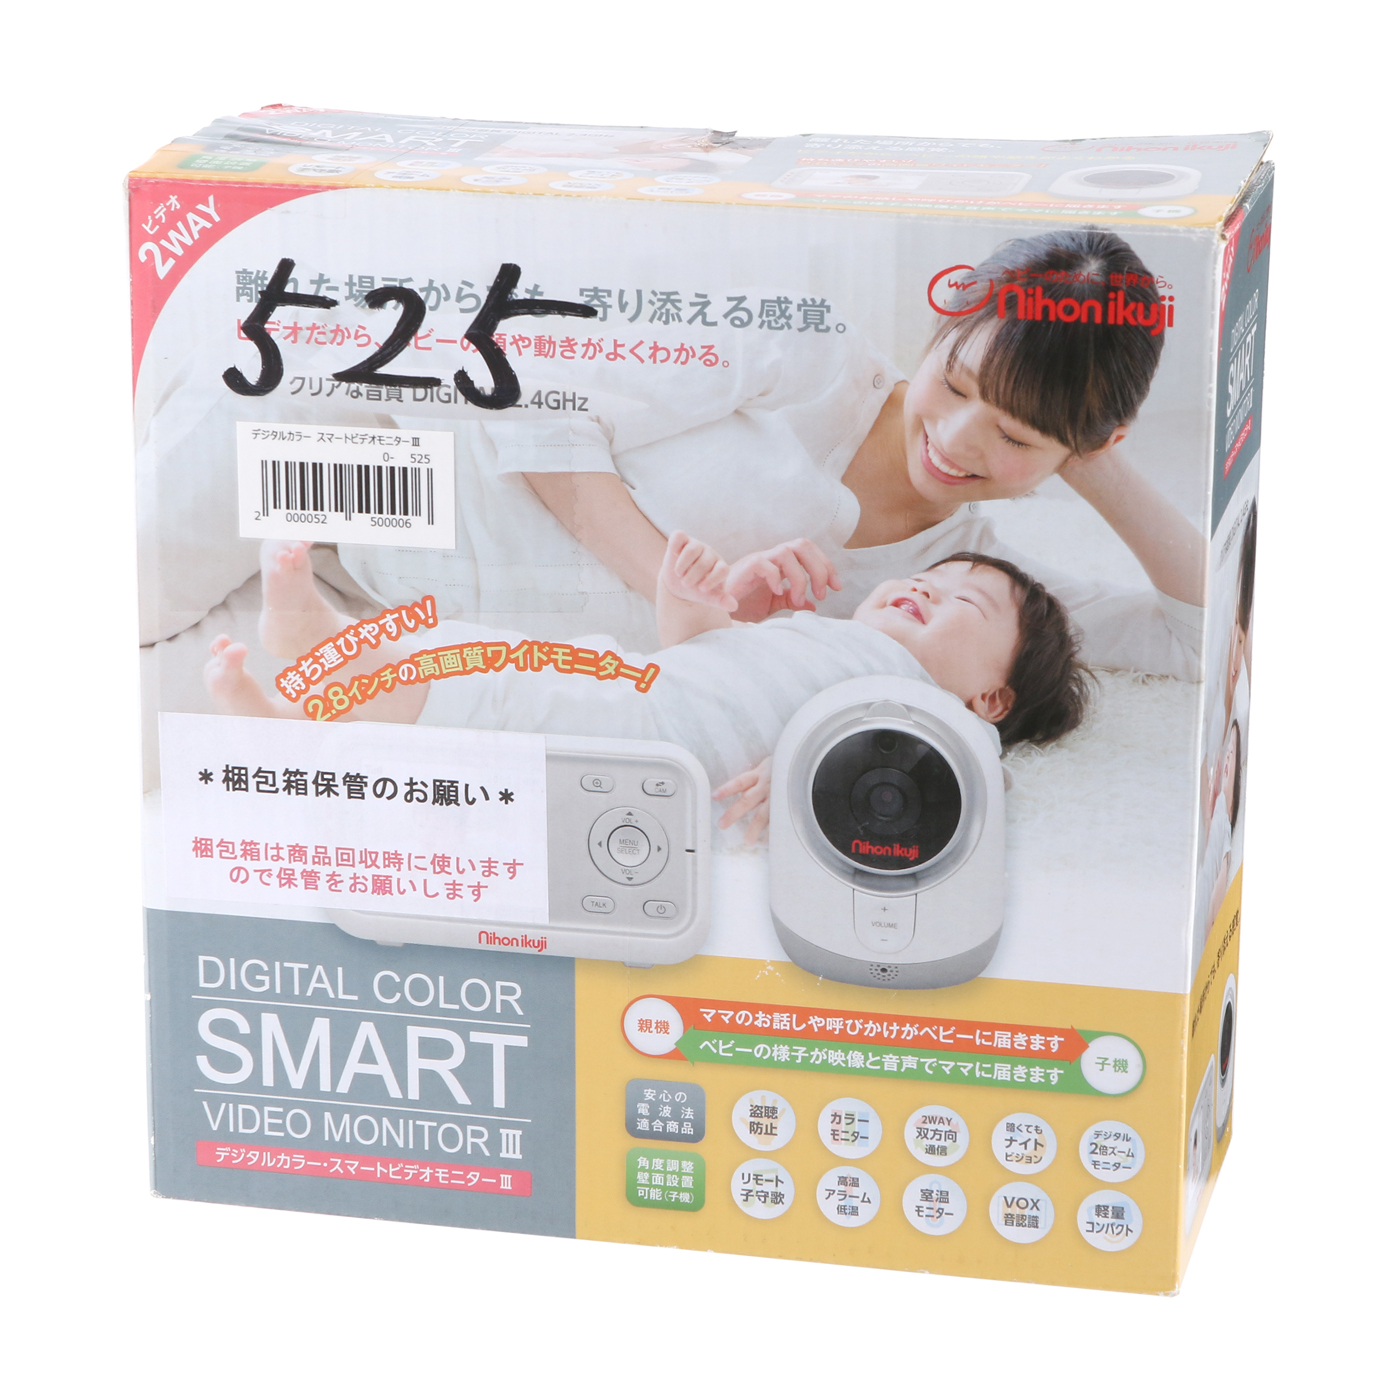 日本育児 デジタルカラースマートビデオモニターⅢを他商品と比較 